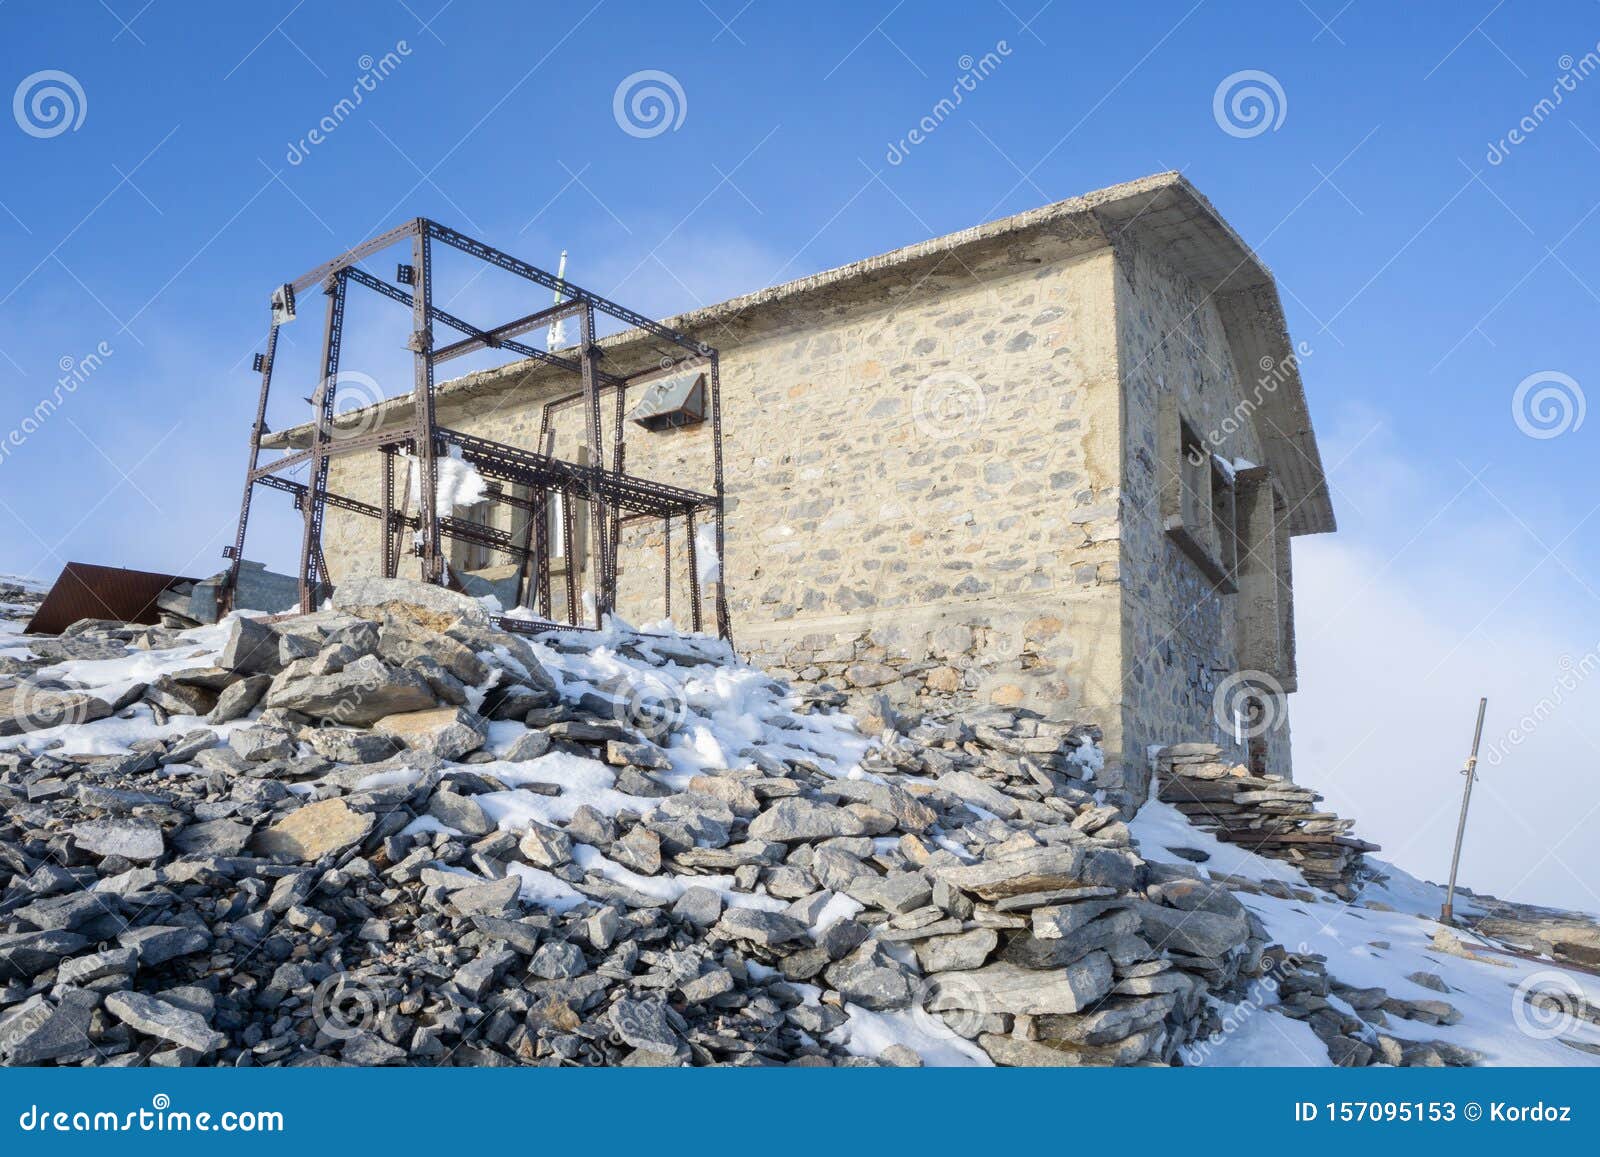 emergency shelter at agios antonios peak of mount olympus